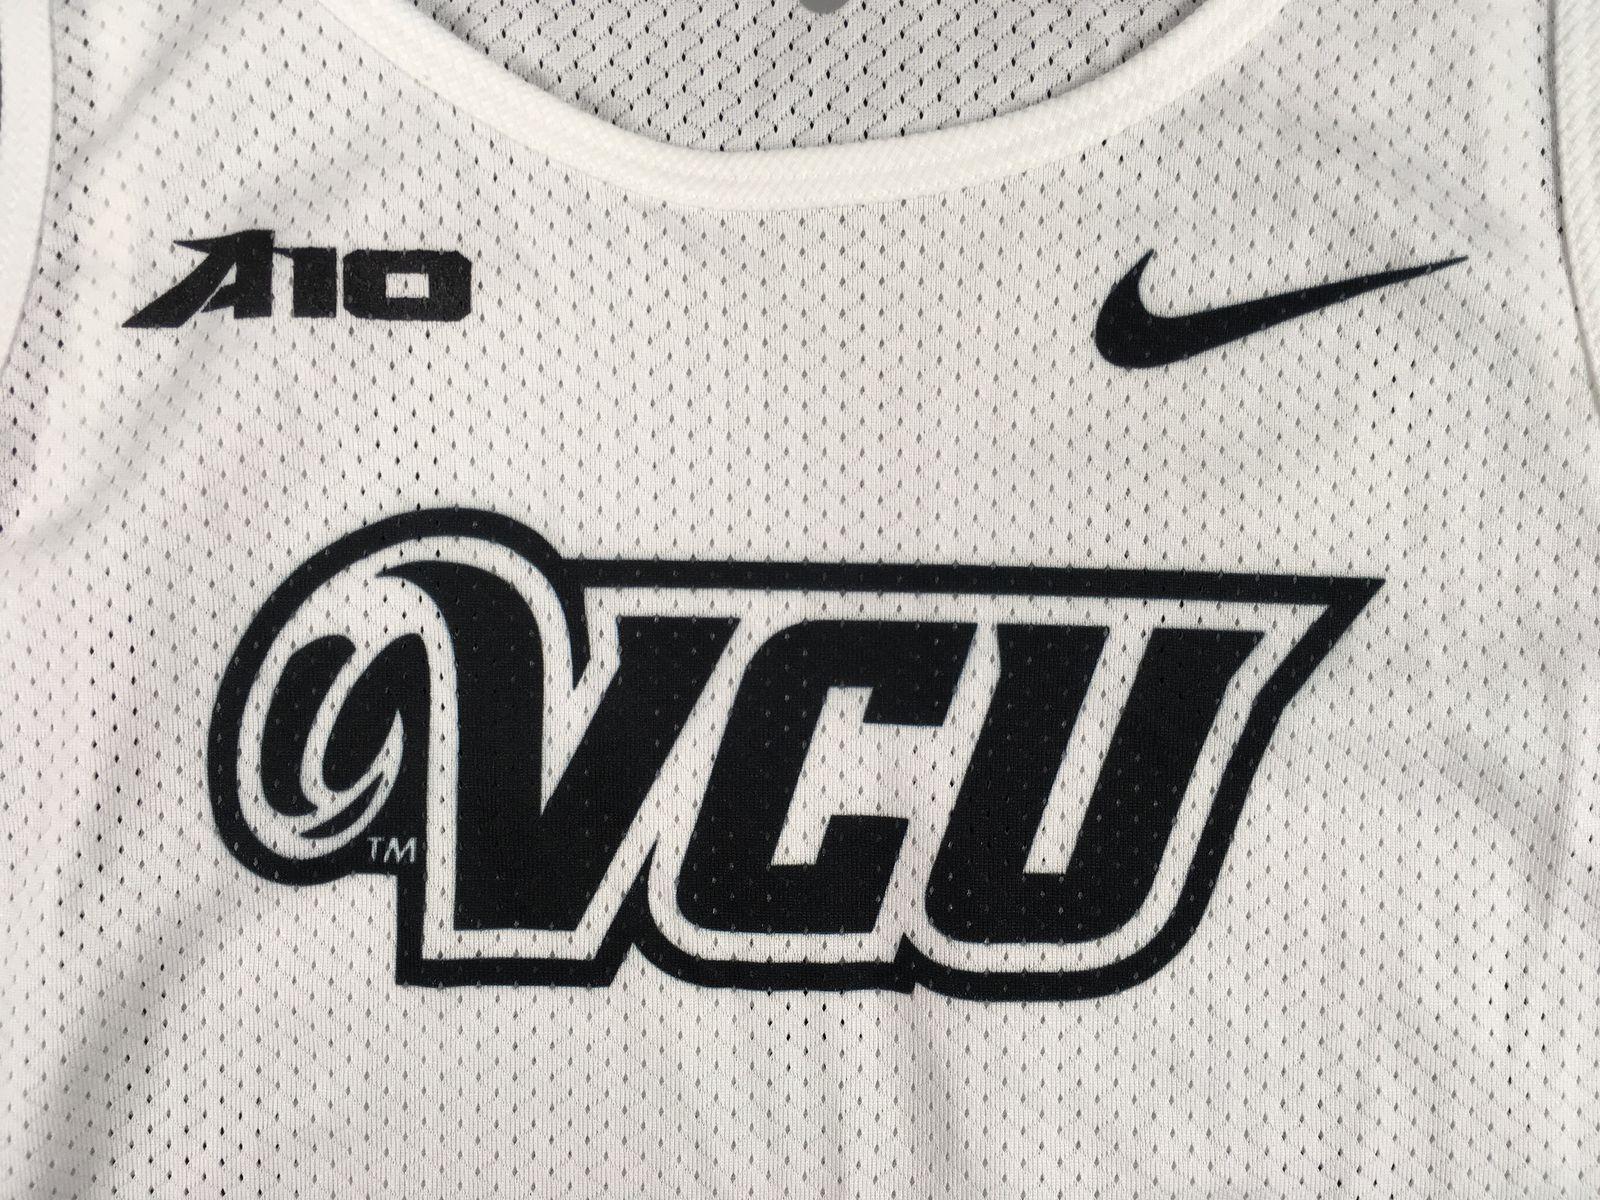 VCU Black and White Logo - Nike VCU Rams - White Poly Sleeveless Shirt (Multiple Sizes) - Used ...